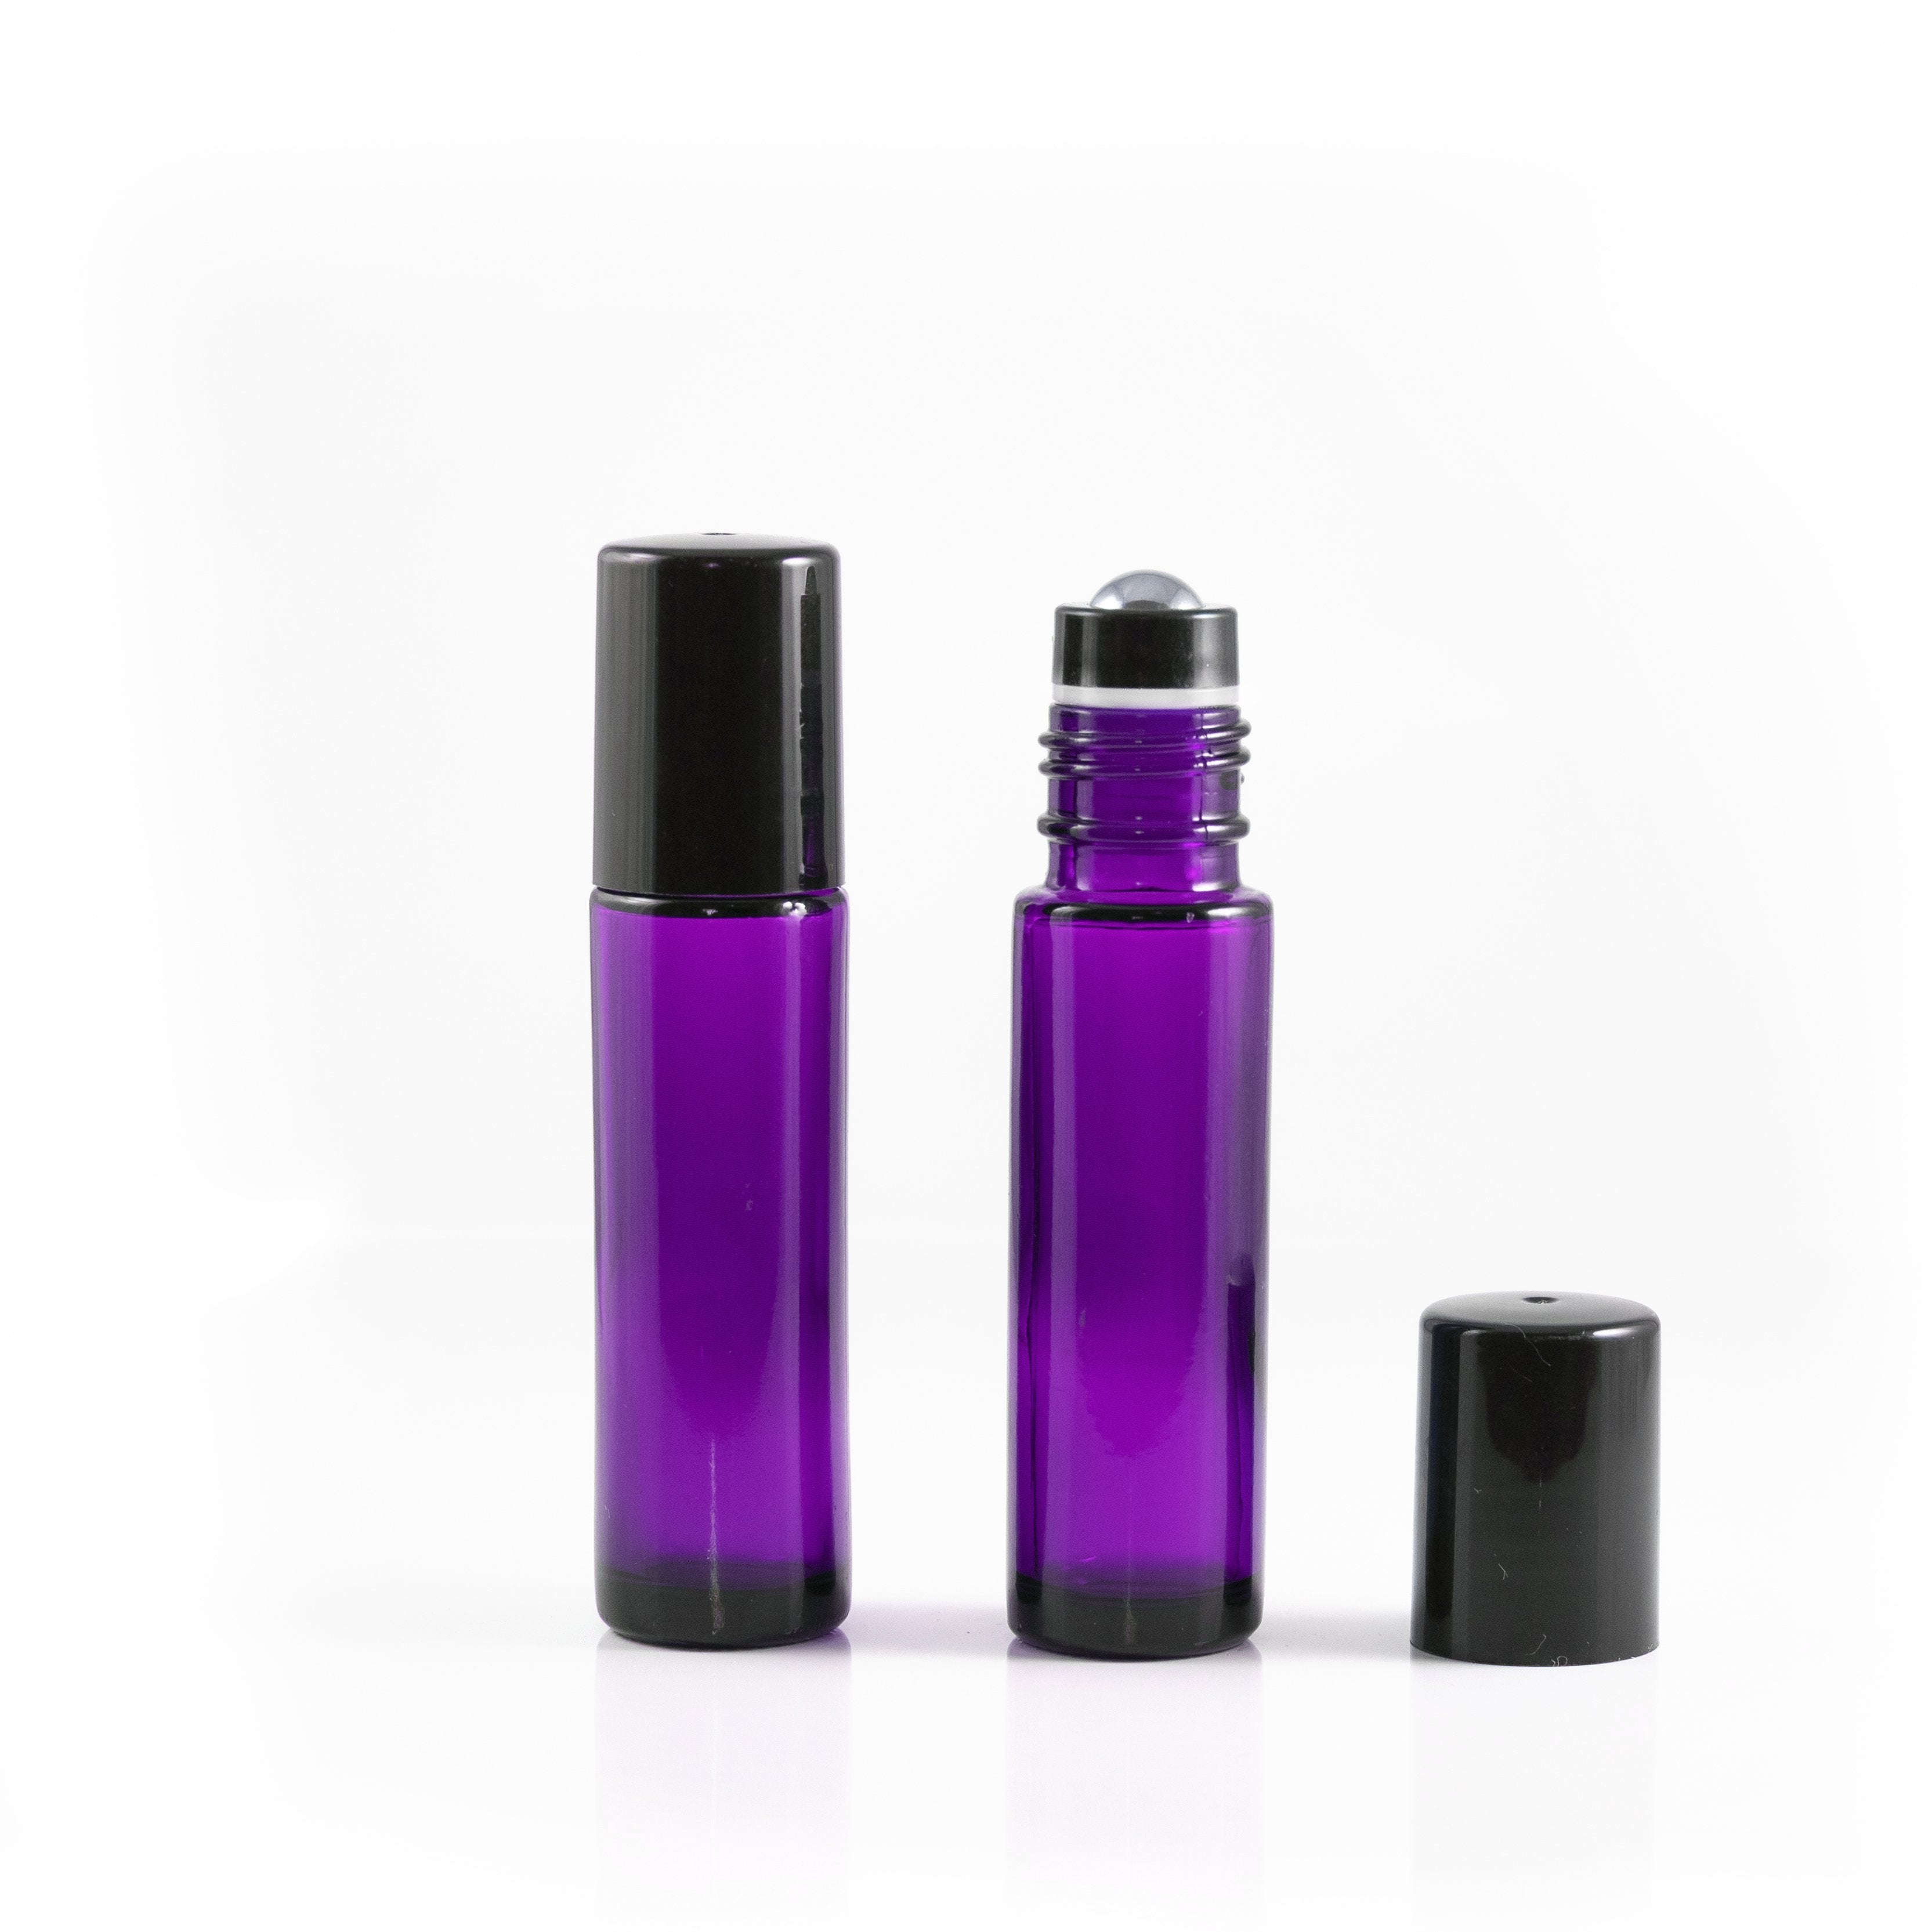 10ml fioletowa szklana butelka z nasadką z kulką ze stali nierdzewnej i czarną nakrętką (5szt.)